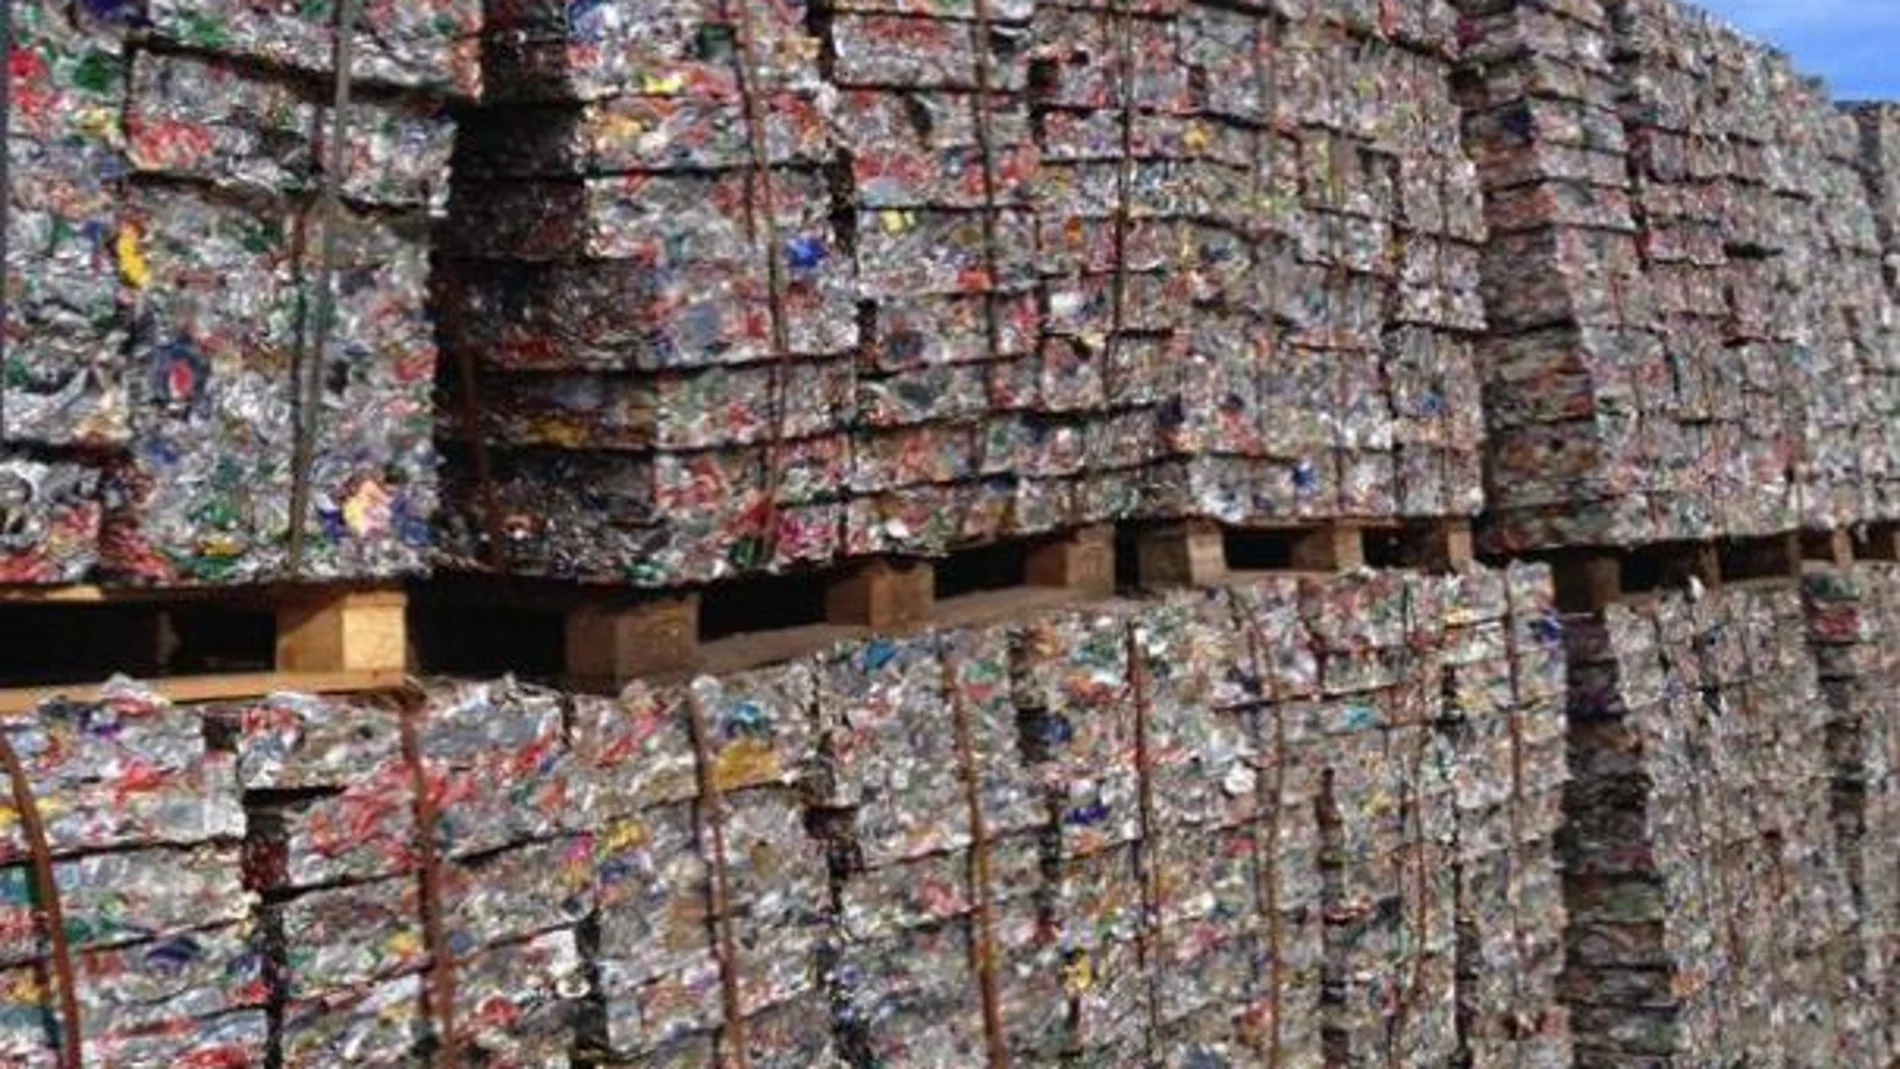 Los productores de latas afirman que se reciclan el 85 por ciento de las latas